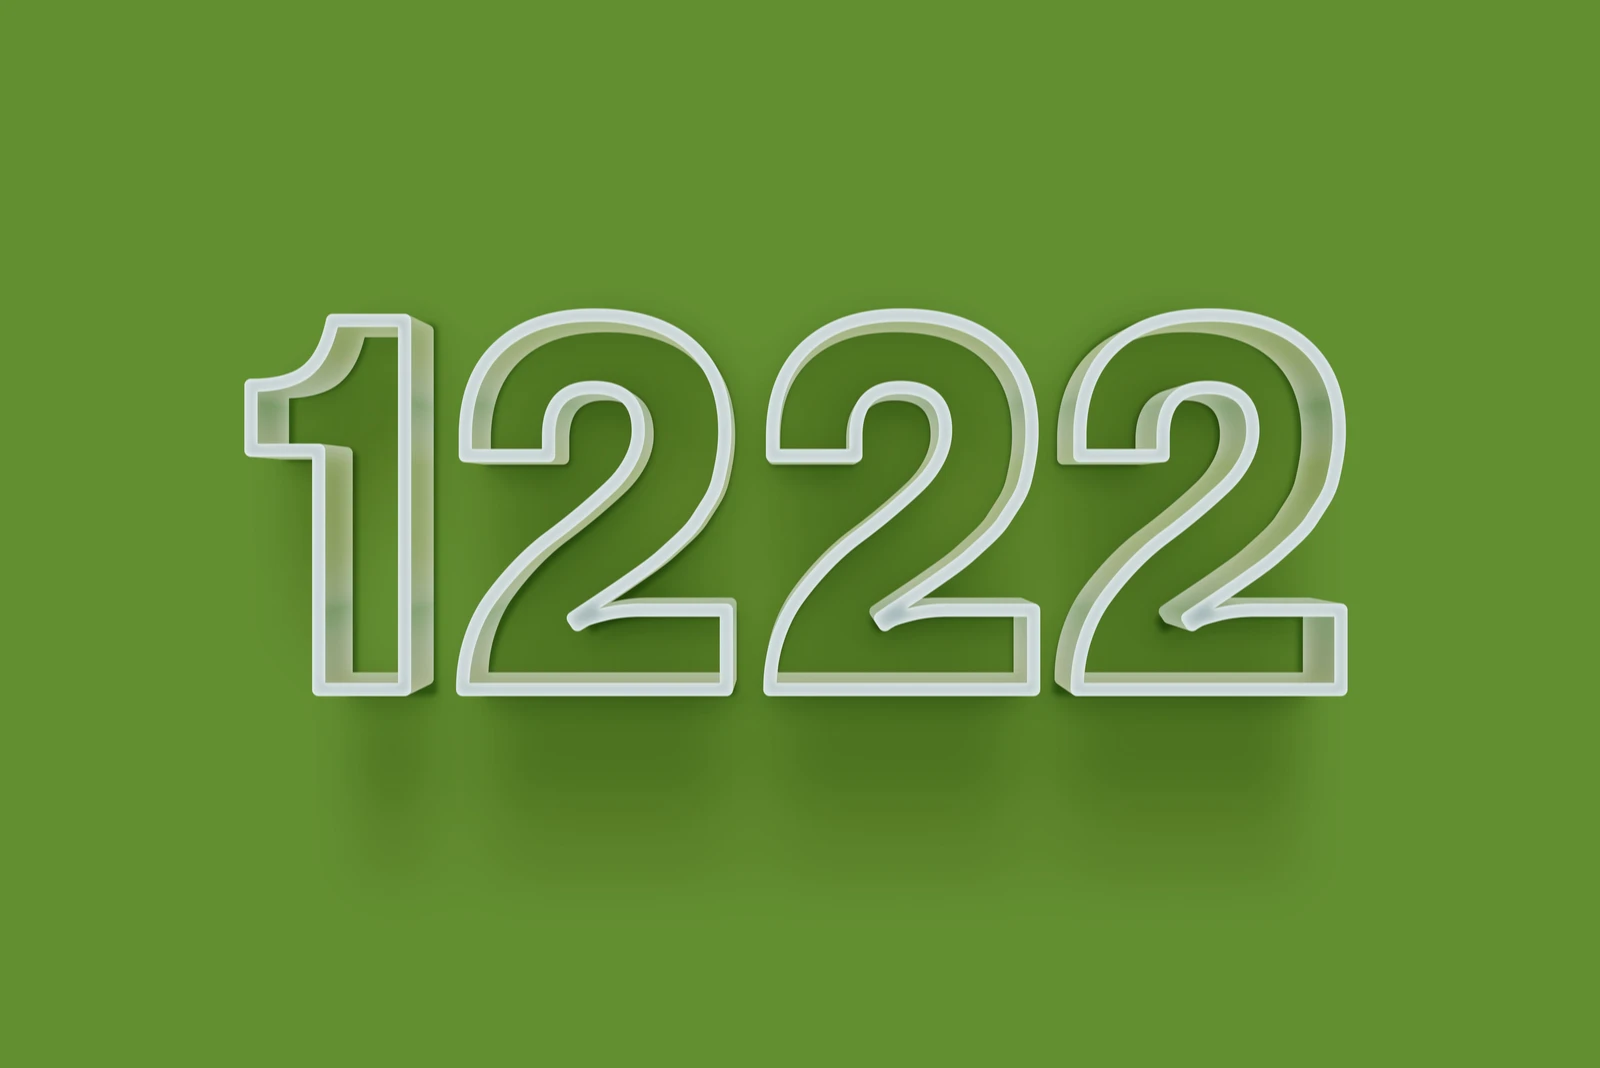 Nummer 1222 auf grünem Hintergrund